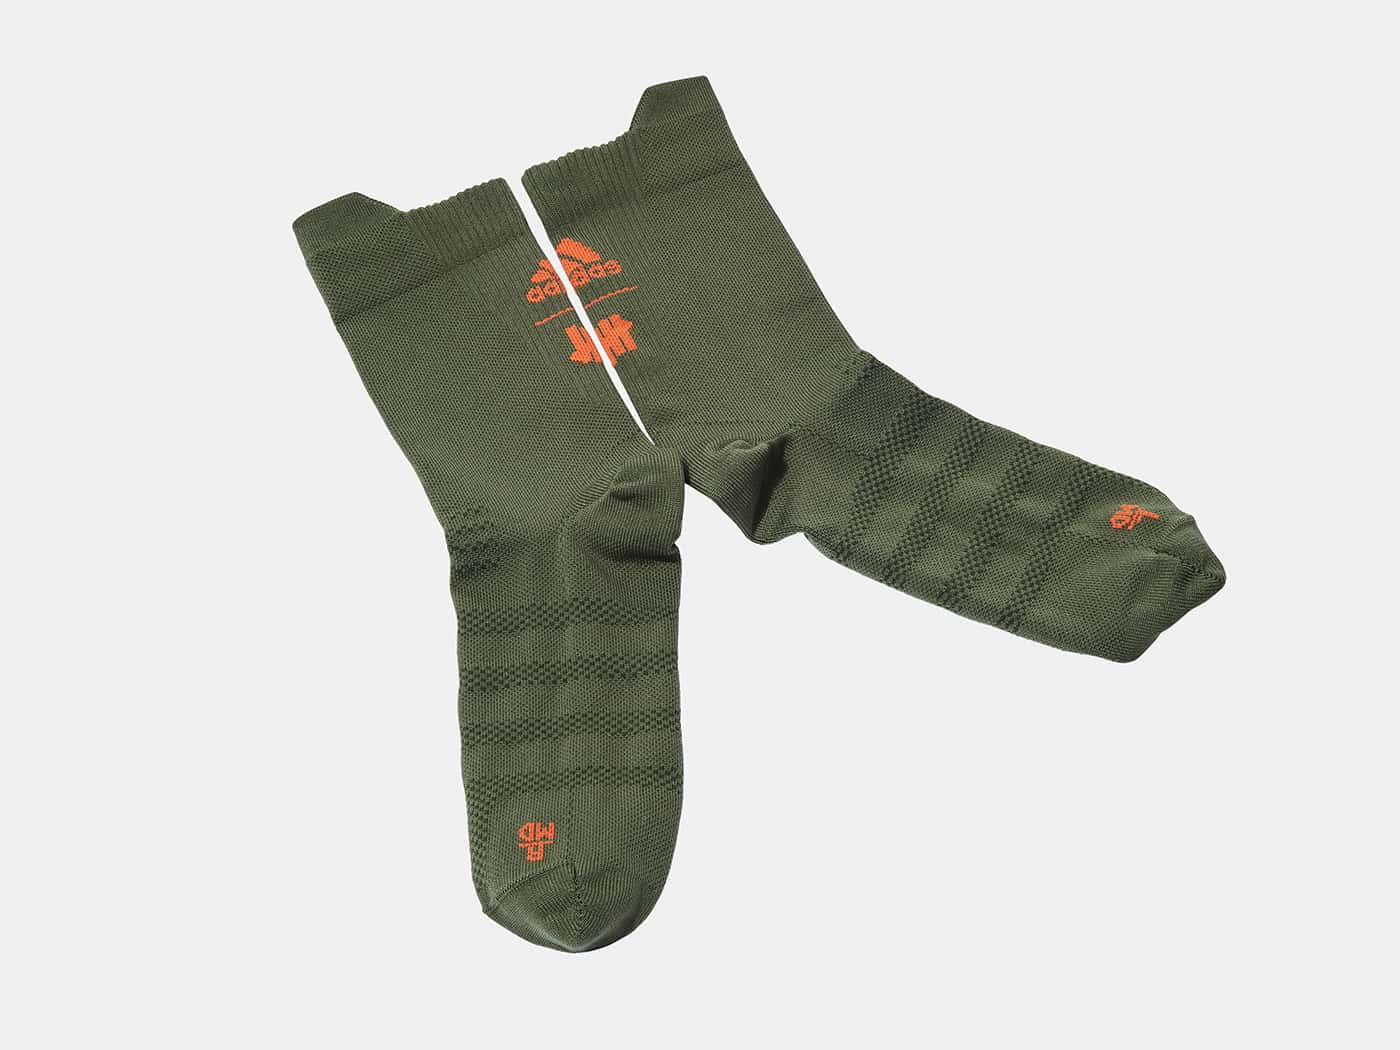 아디다스 x 언디핏 양말(adidas x Undefeated Socks)-DY5865-olive cargo